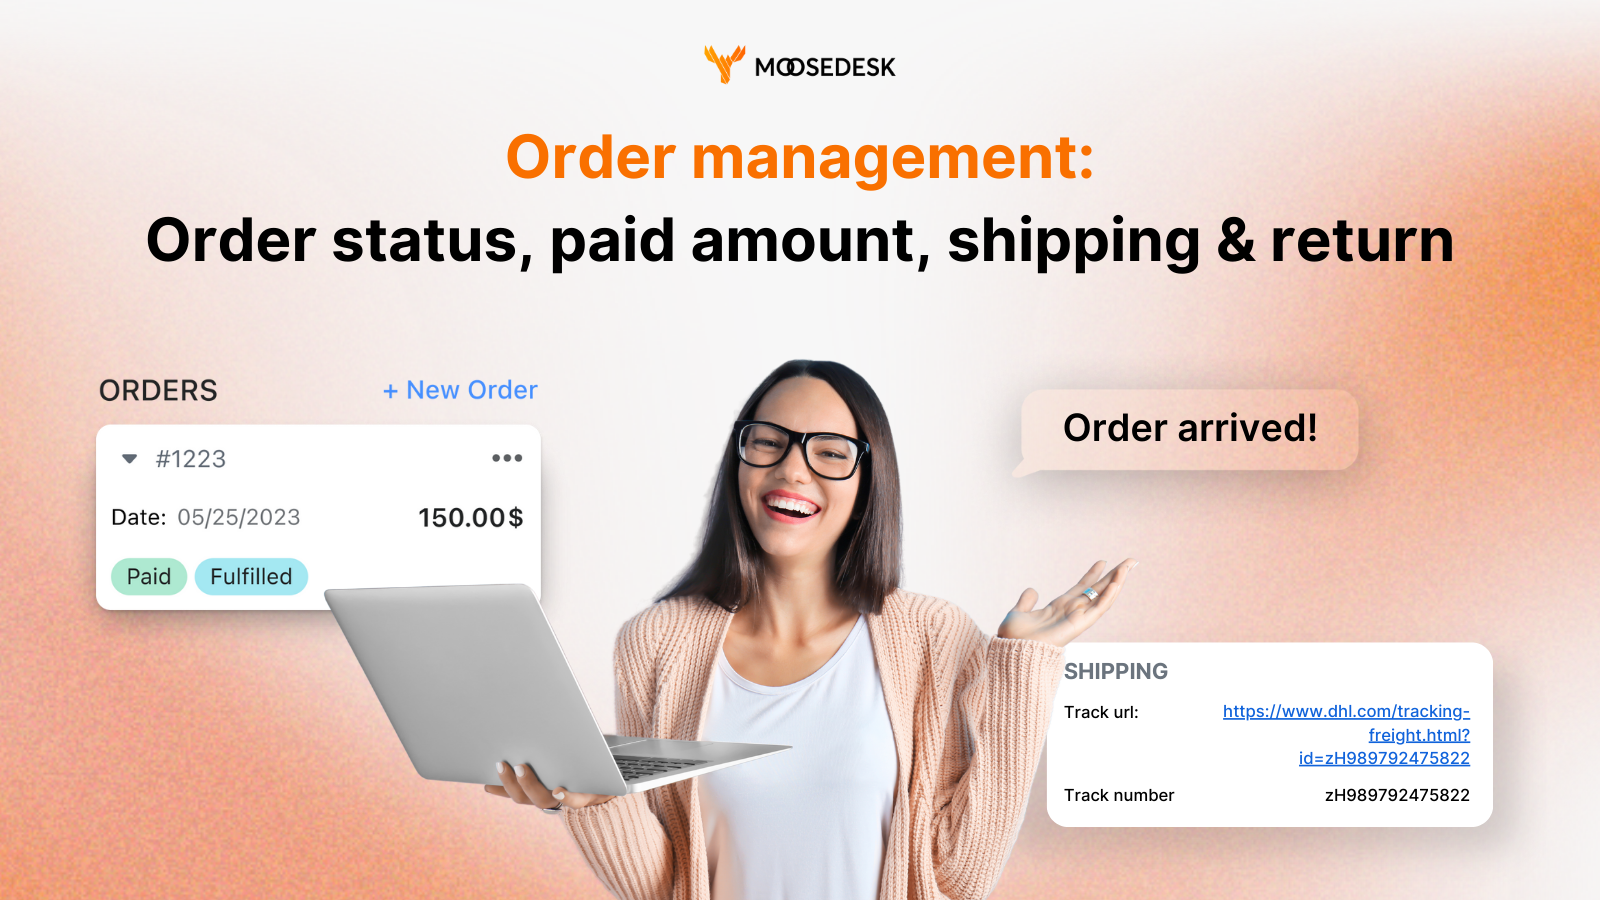 MooseDesk klant orderbeheer order tracking